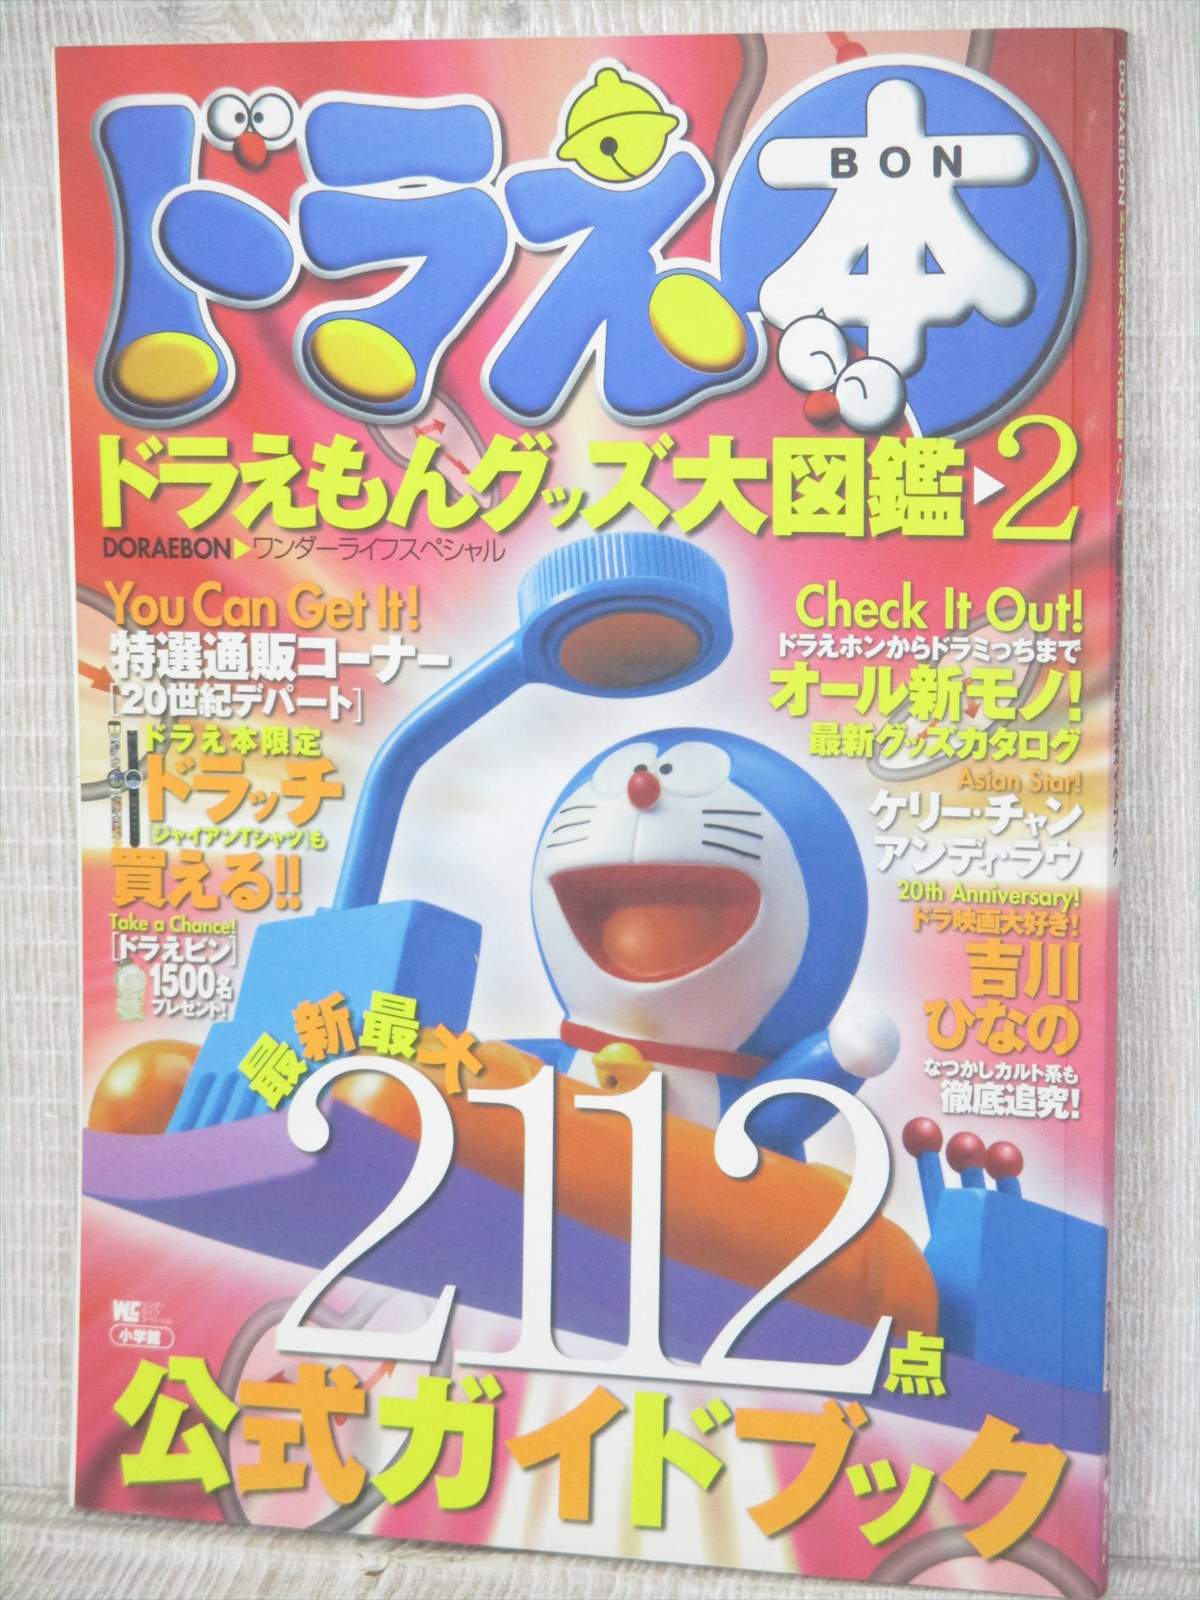 Doraemon Goods Daizukan 2 Doraebon Art Fan Book Encyclopedia 1998 Sg Ebay